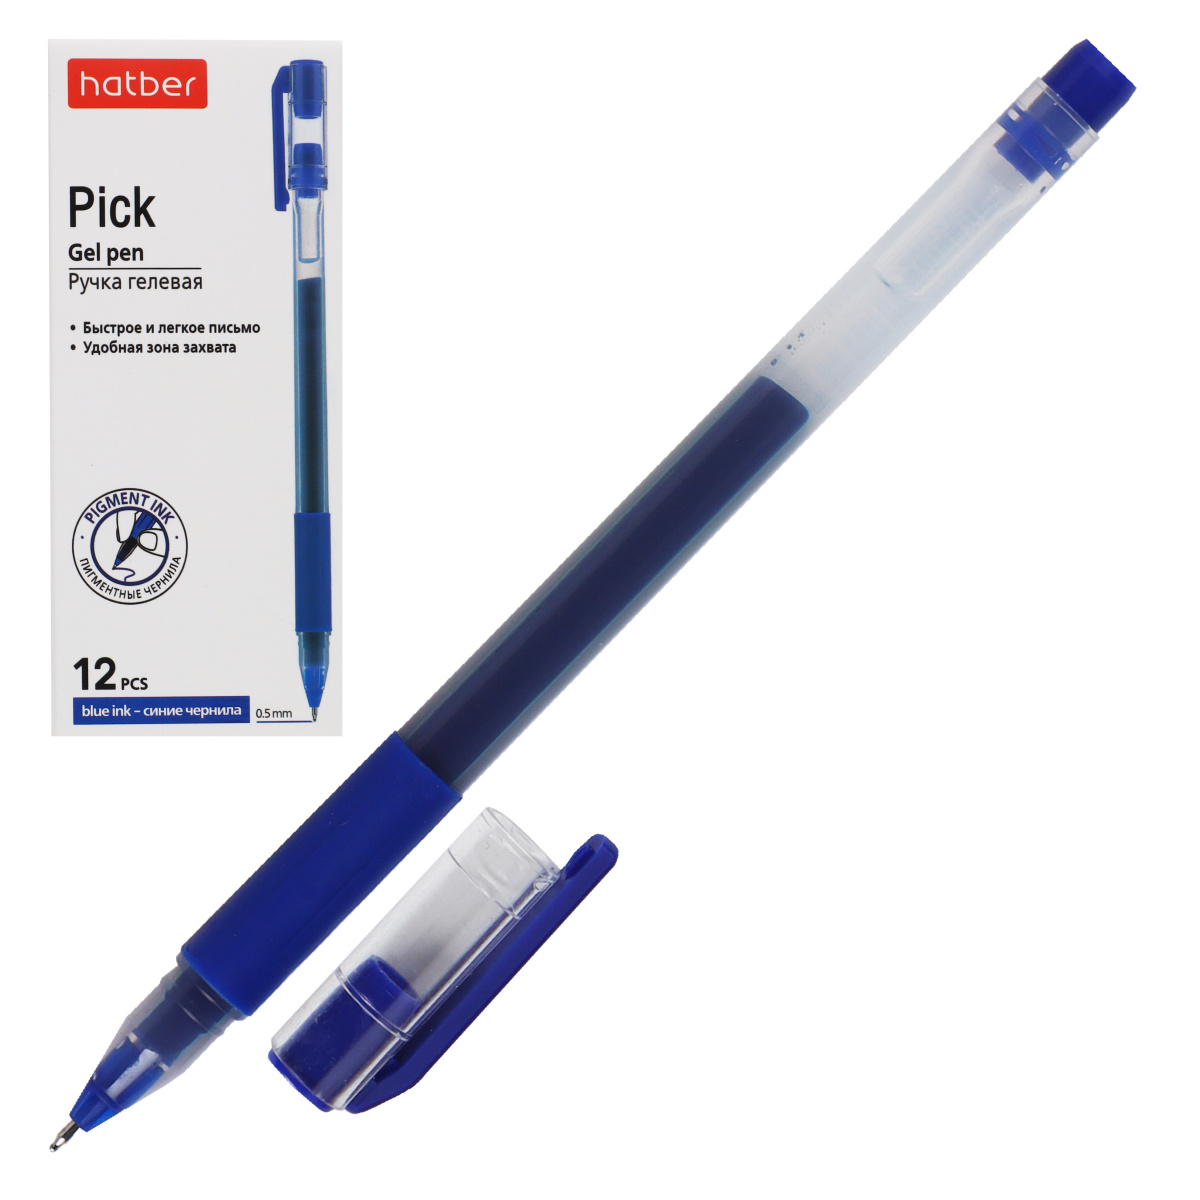 Ручка гелевая Hatber Pick синяя 0.5мм с гриппом GP_080024